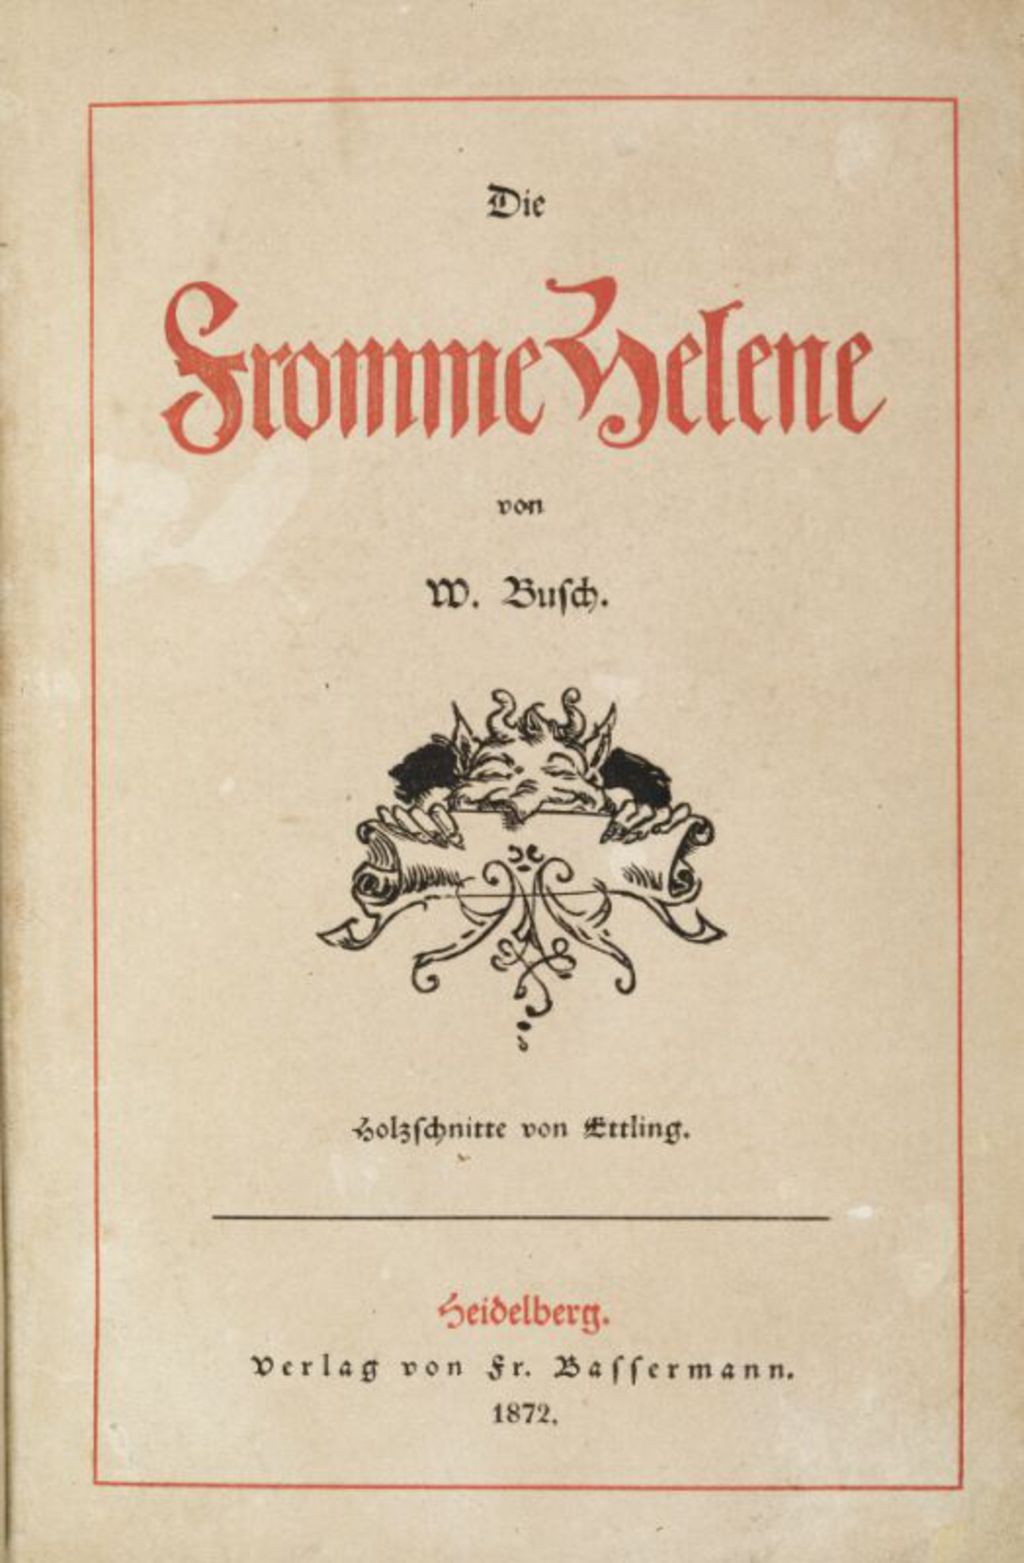 Buch: Busch, Wilhelm "Die fromme Helene", 1872